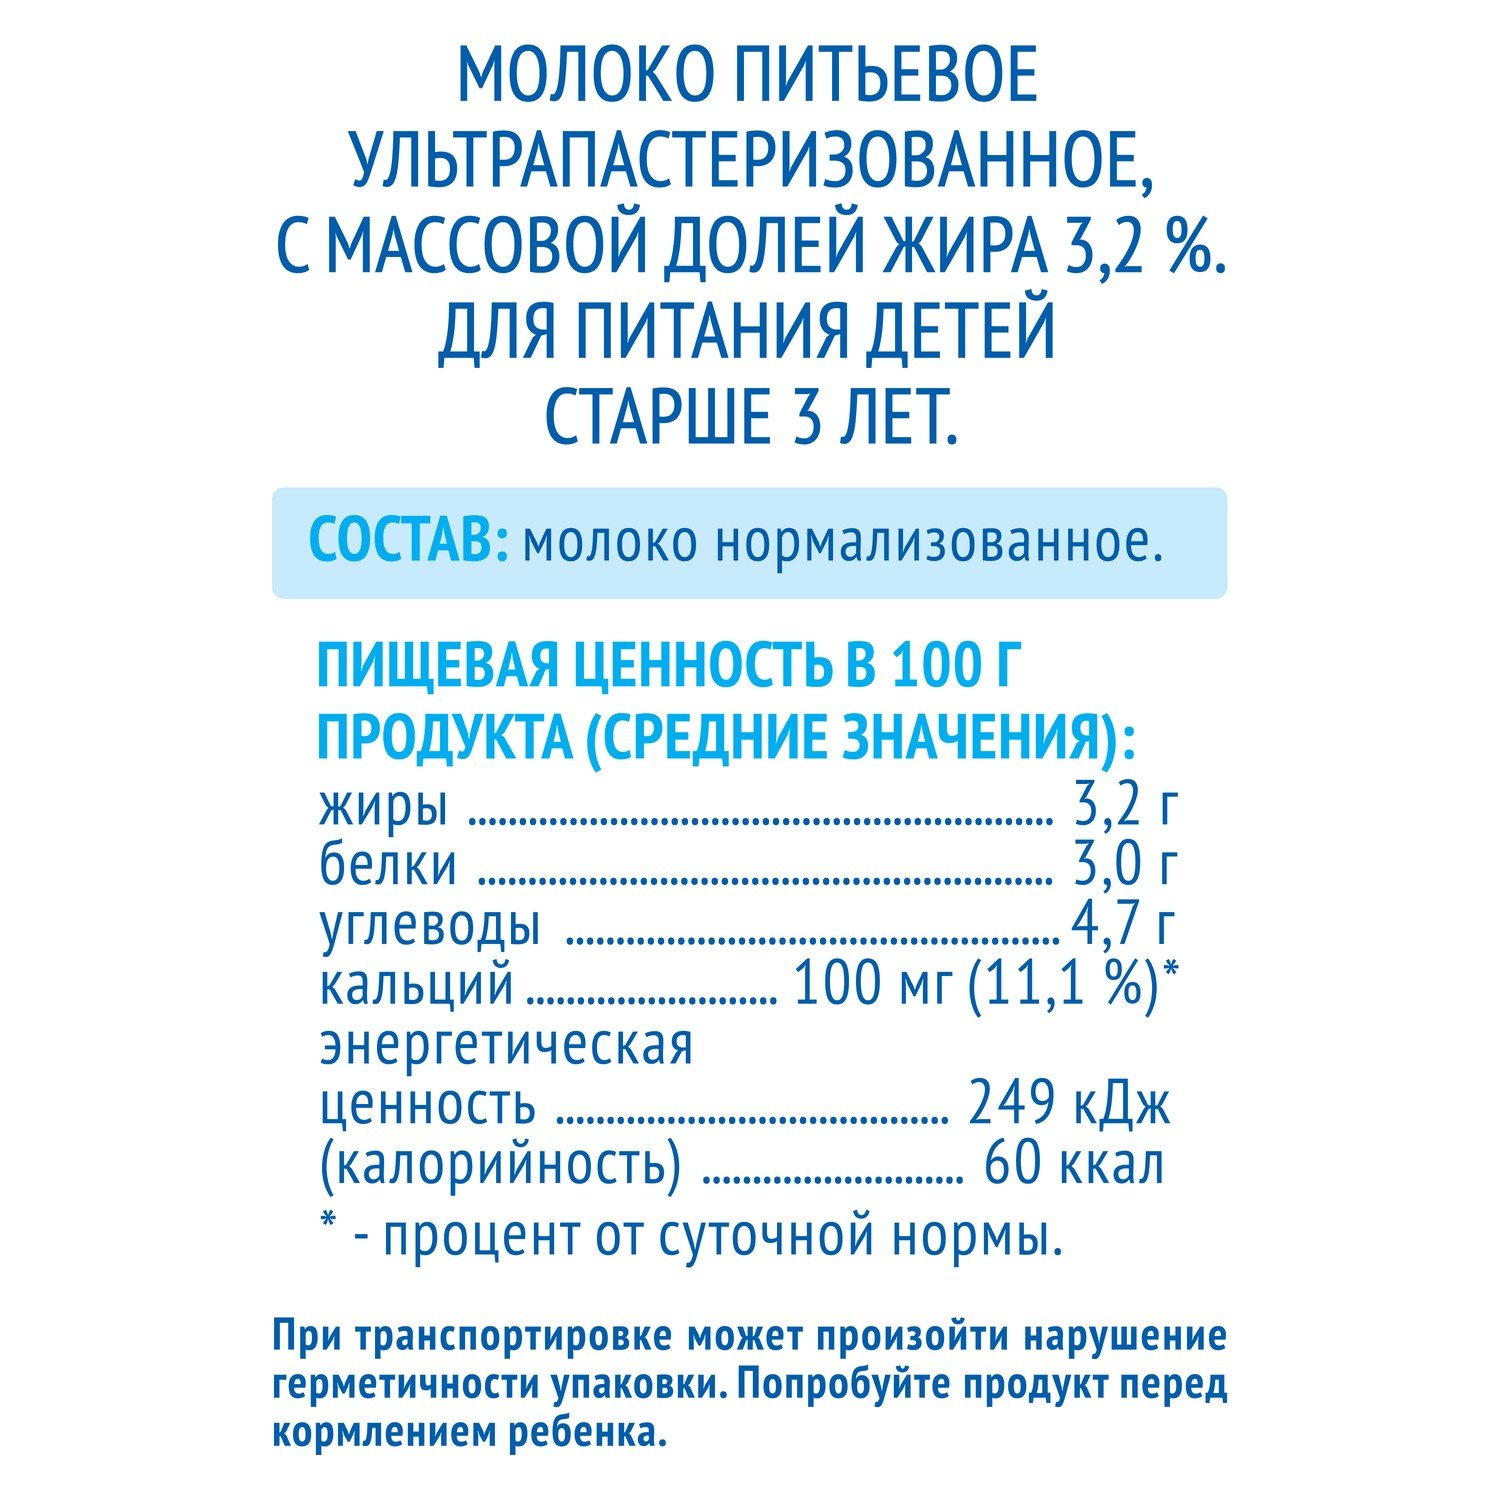 Молоко Агуша ультрапастеризованное 3,2%, 925 мл БЗМЖ